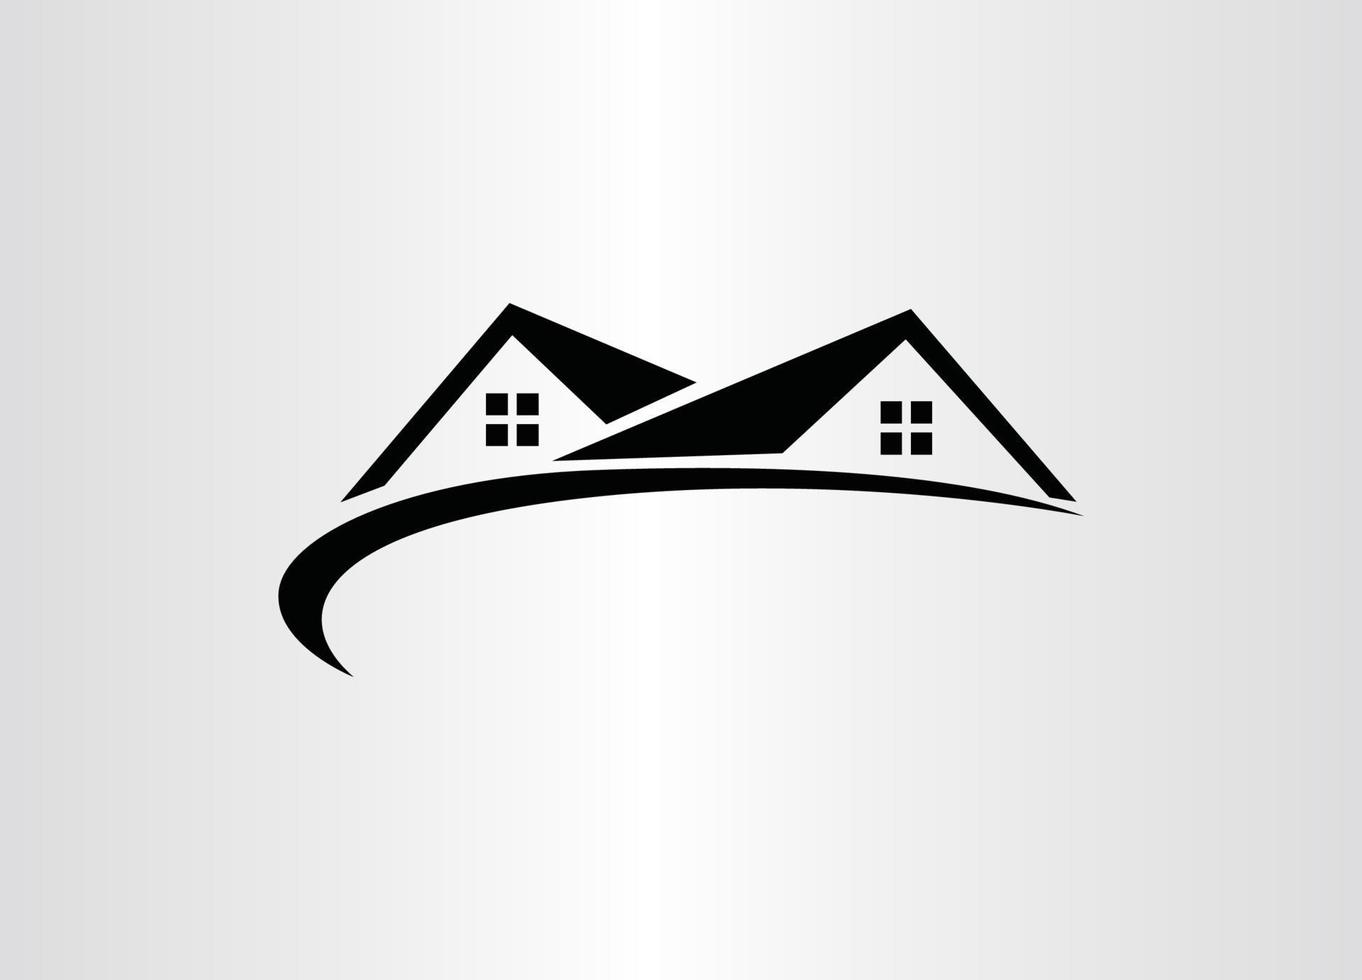 Creative Real Estate Logo Design House Logo Design Real Estate Vector